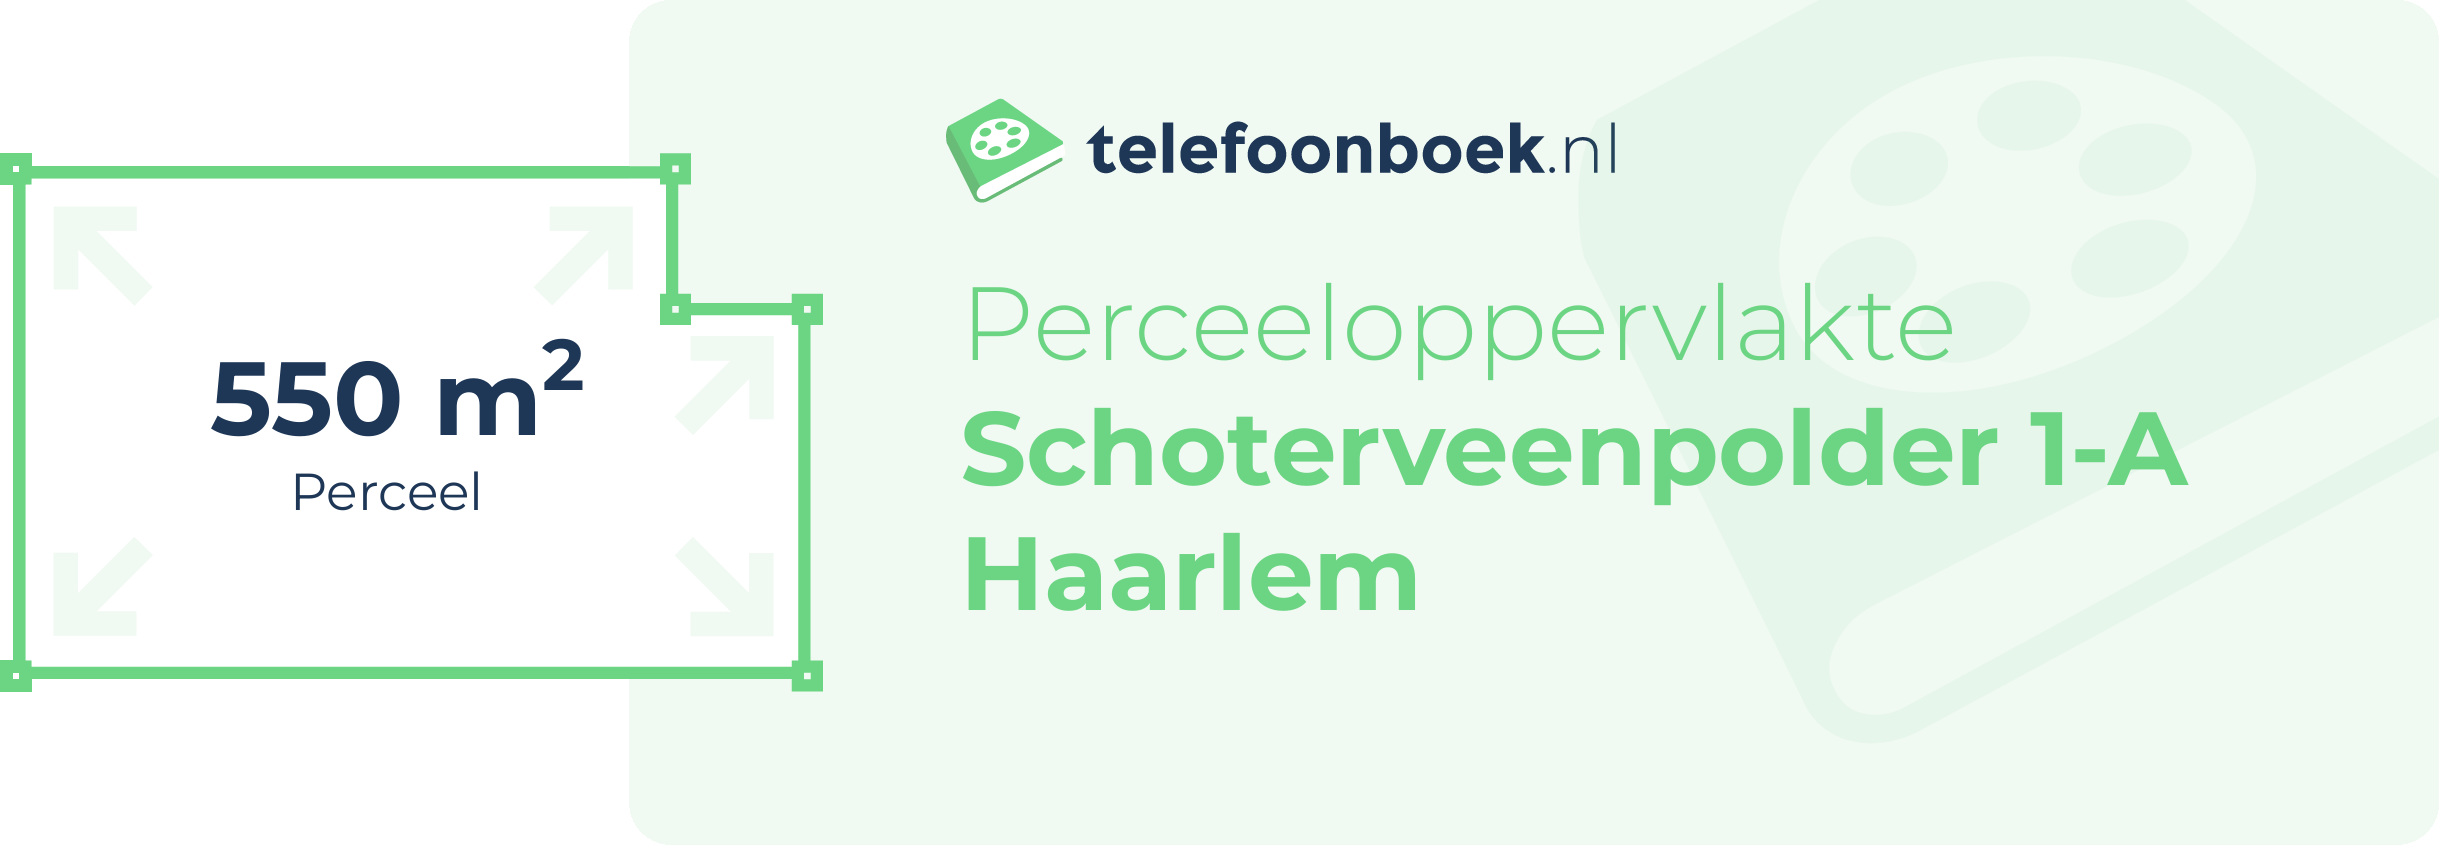 Perceeloppervlakte Schoterveenpolder 1-A Haarlem